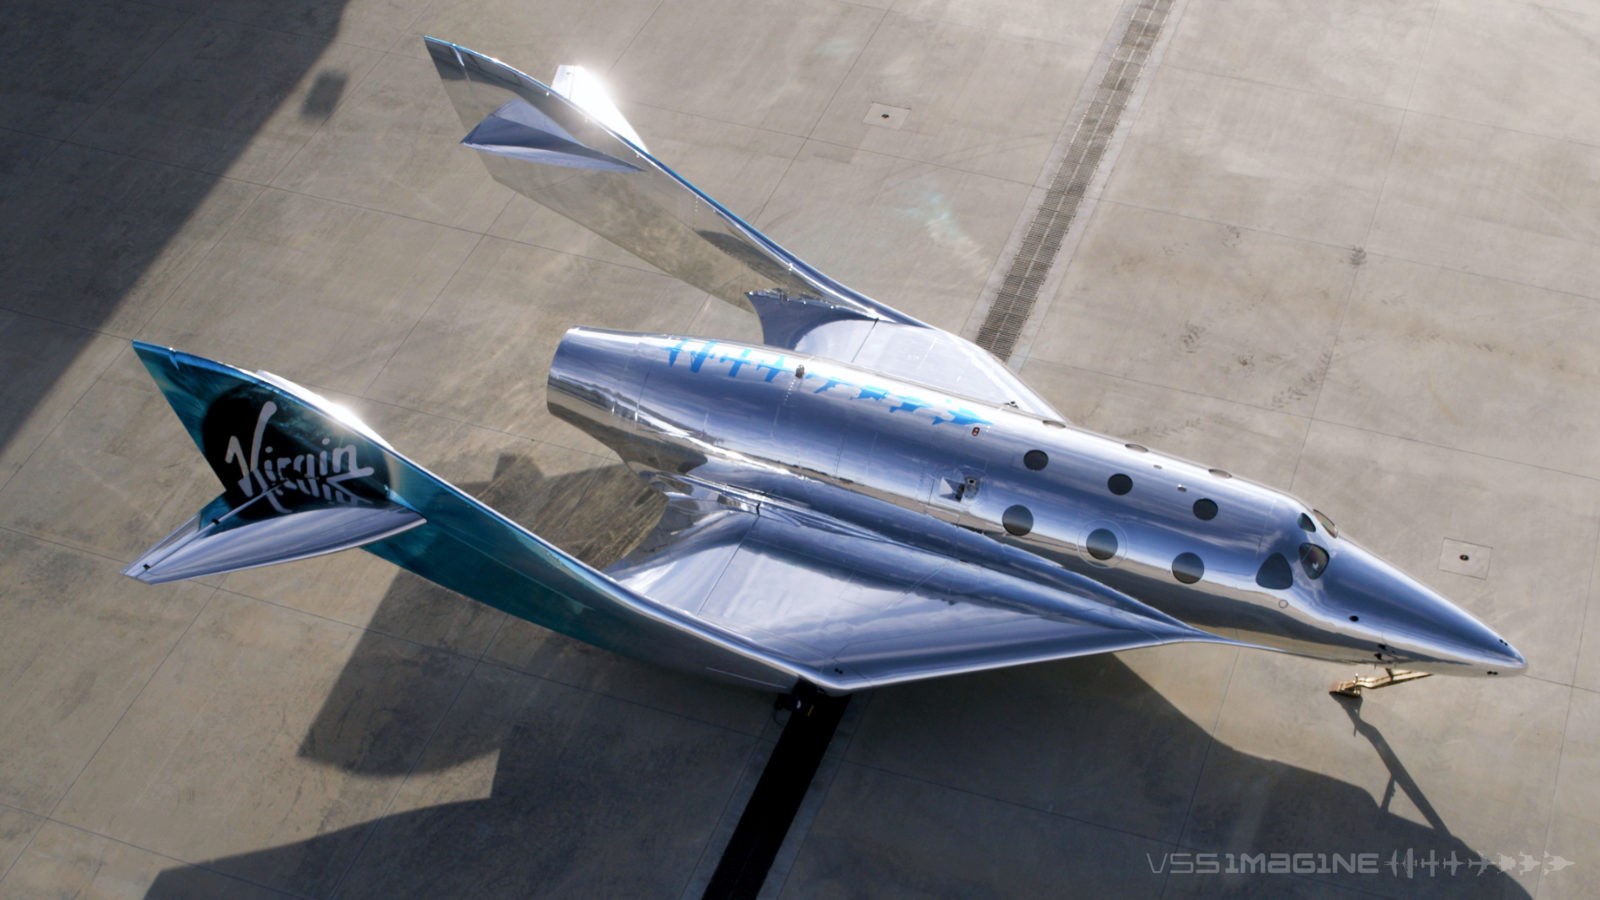 Virgin Galactic yeni nesil uzay gemisini tanıttı: VSS Imagine